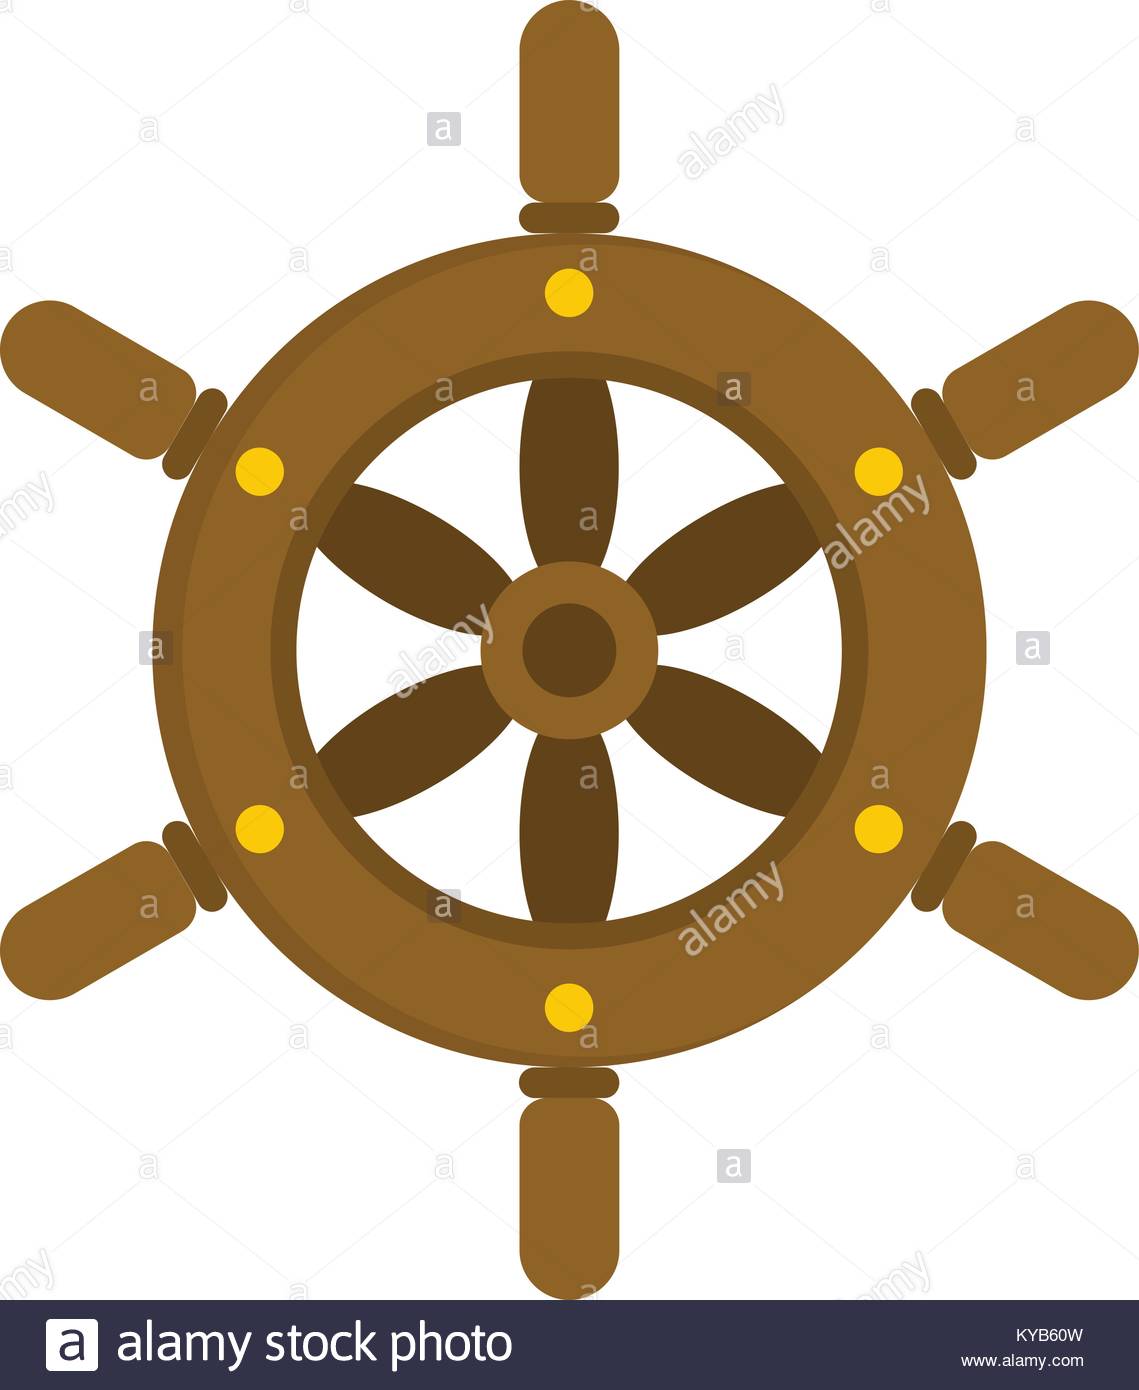 Ship-wheel icons | Noun Project